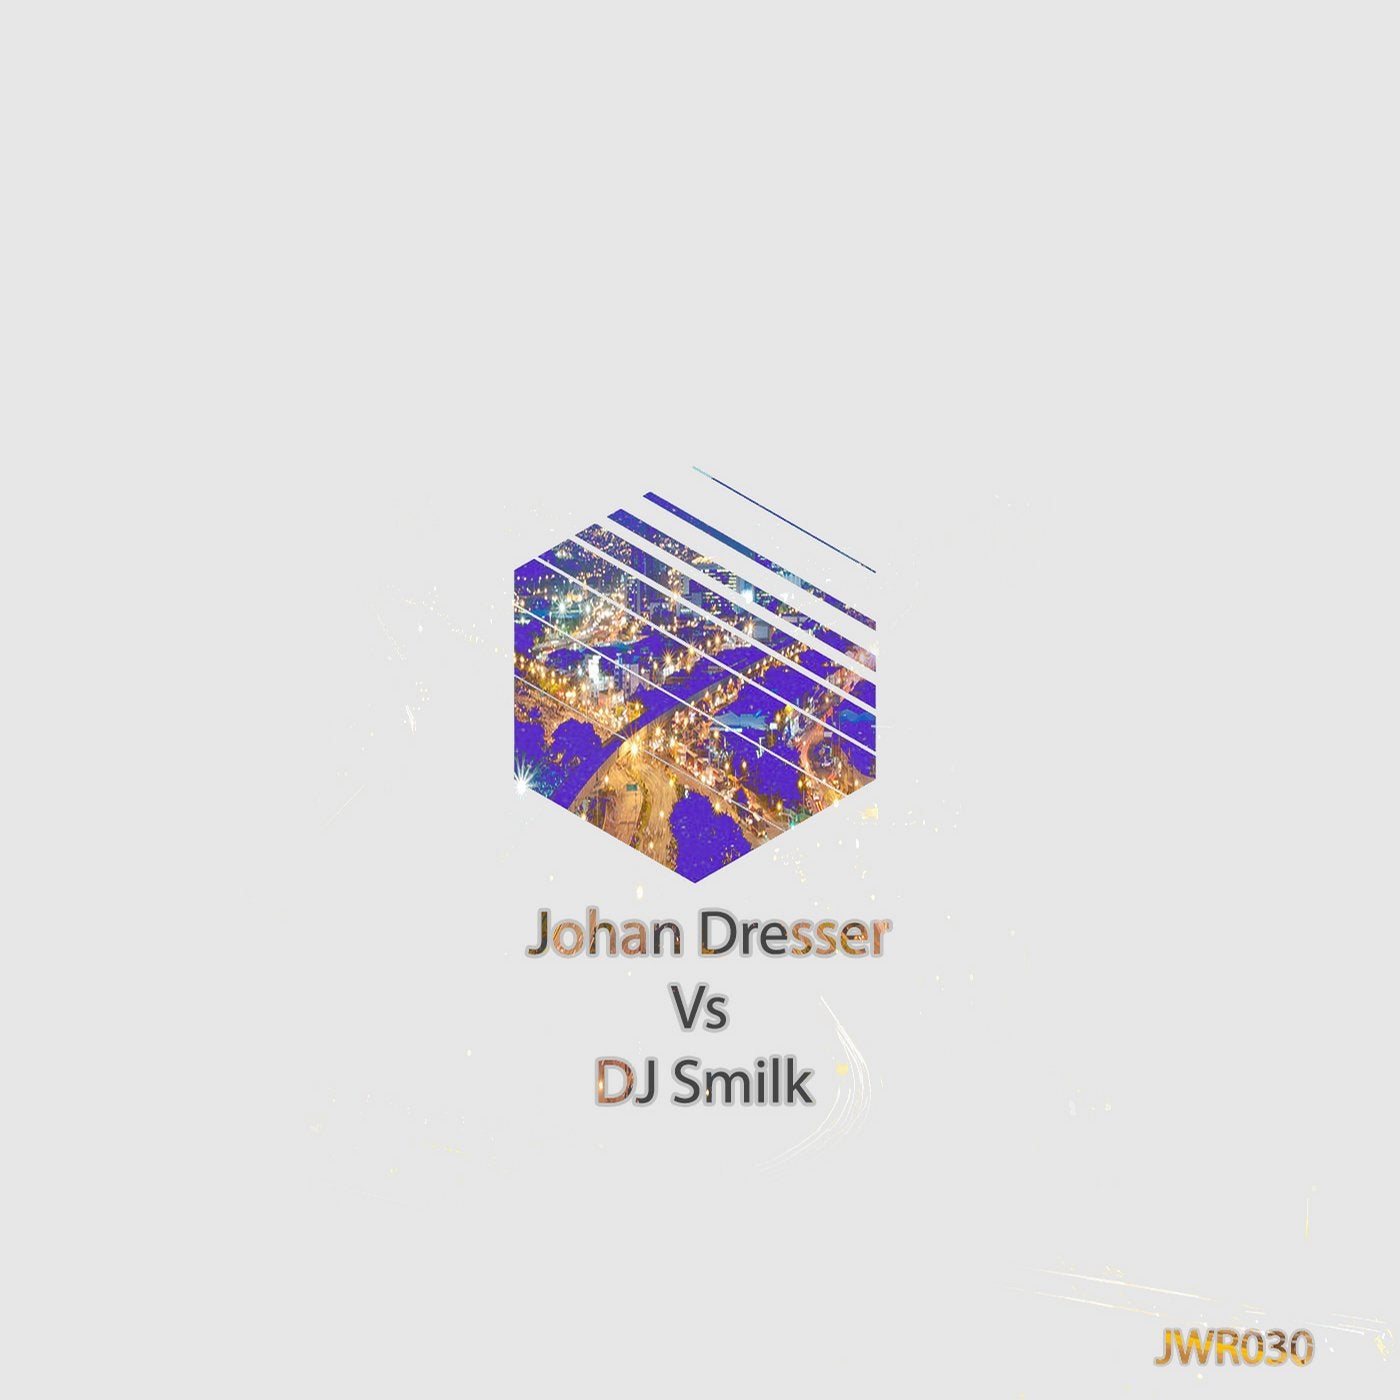 Johan Dresser VS DJ Smilk